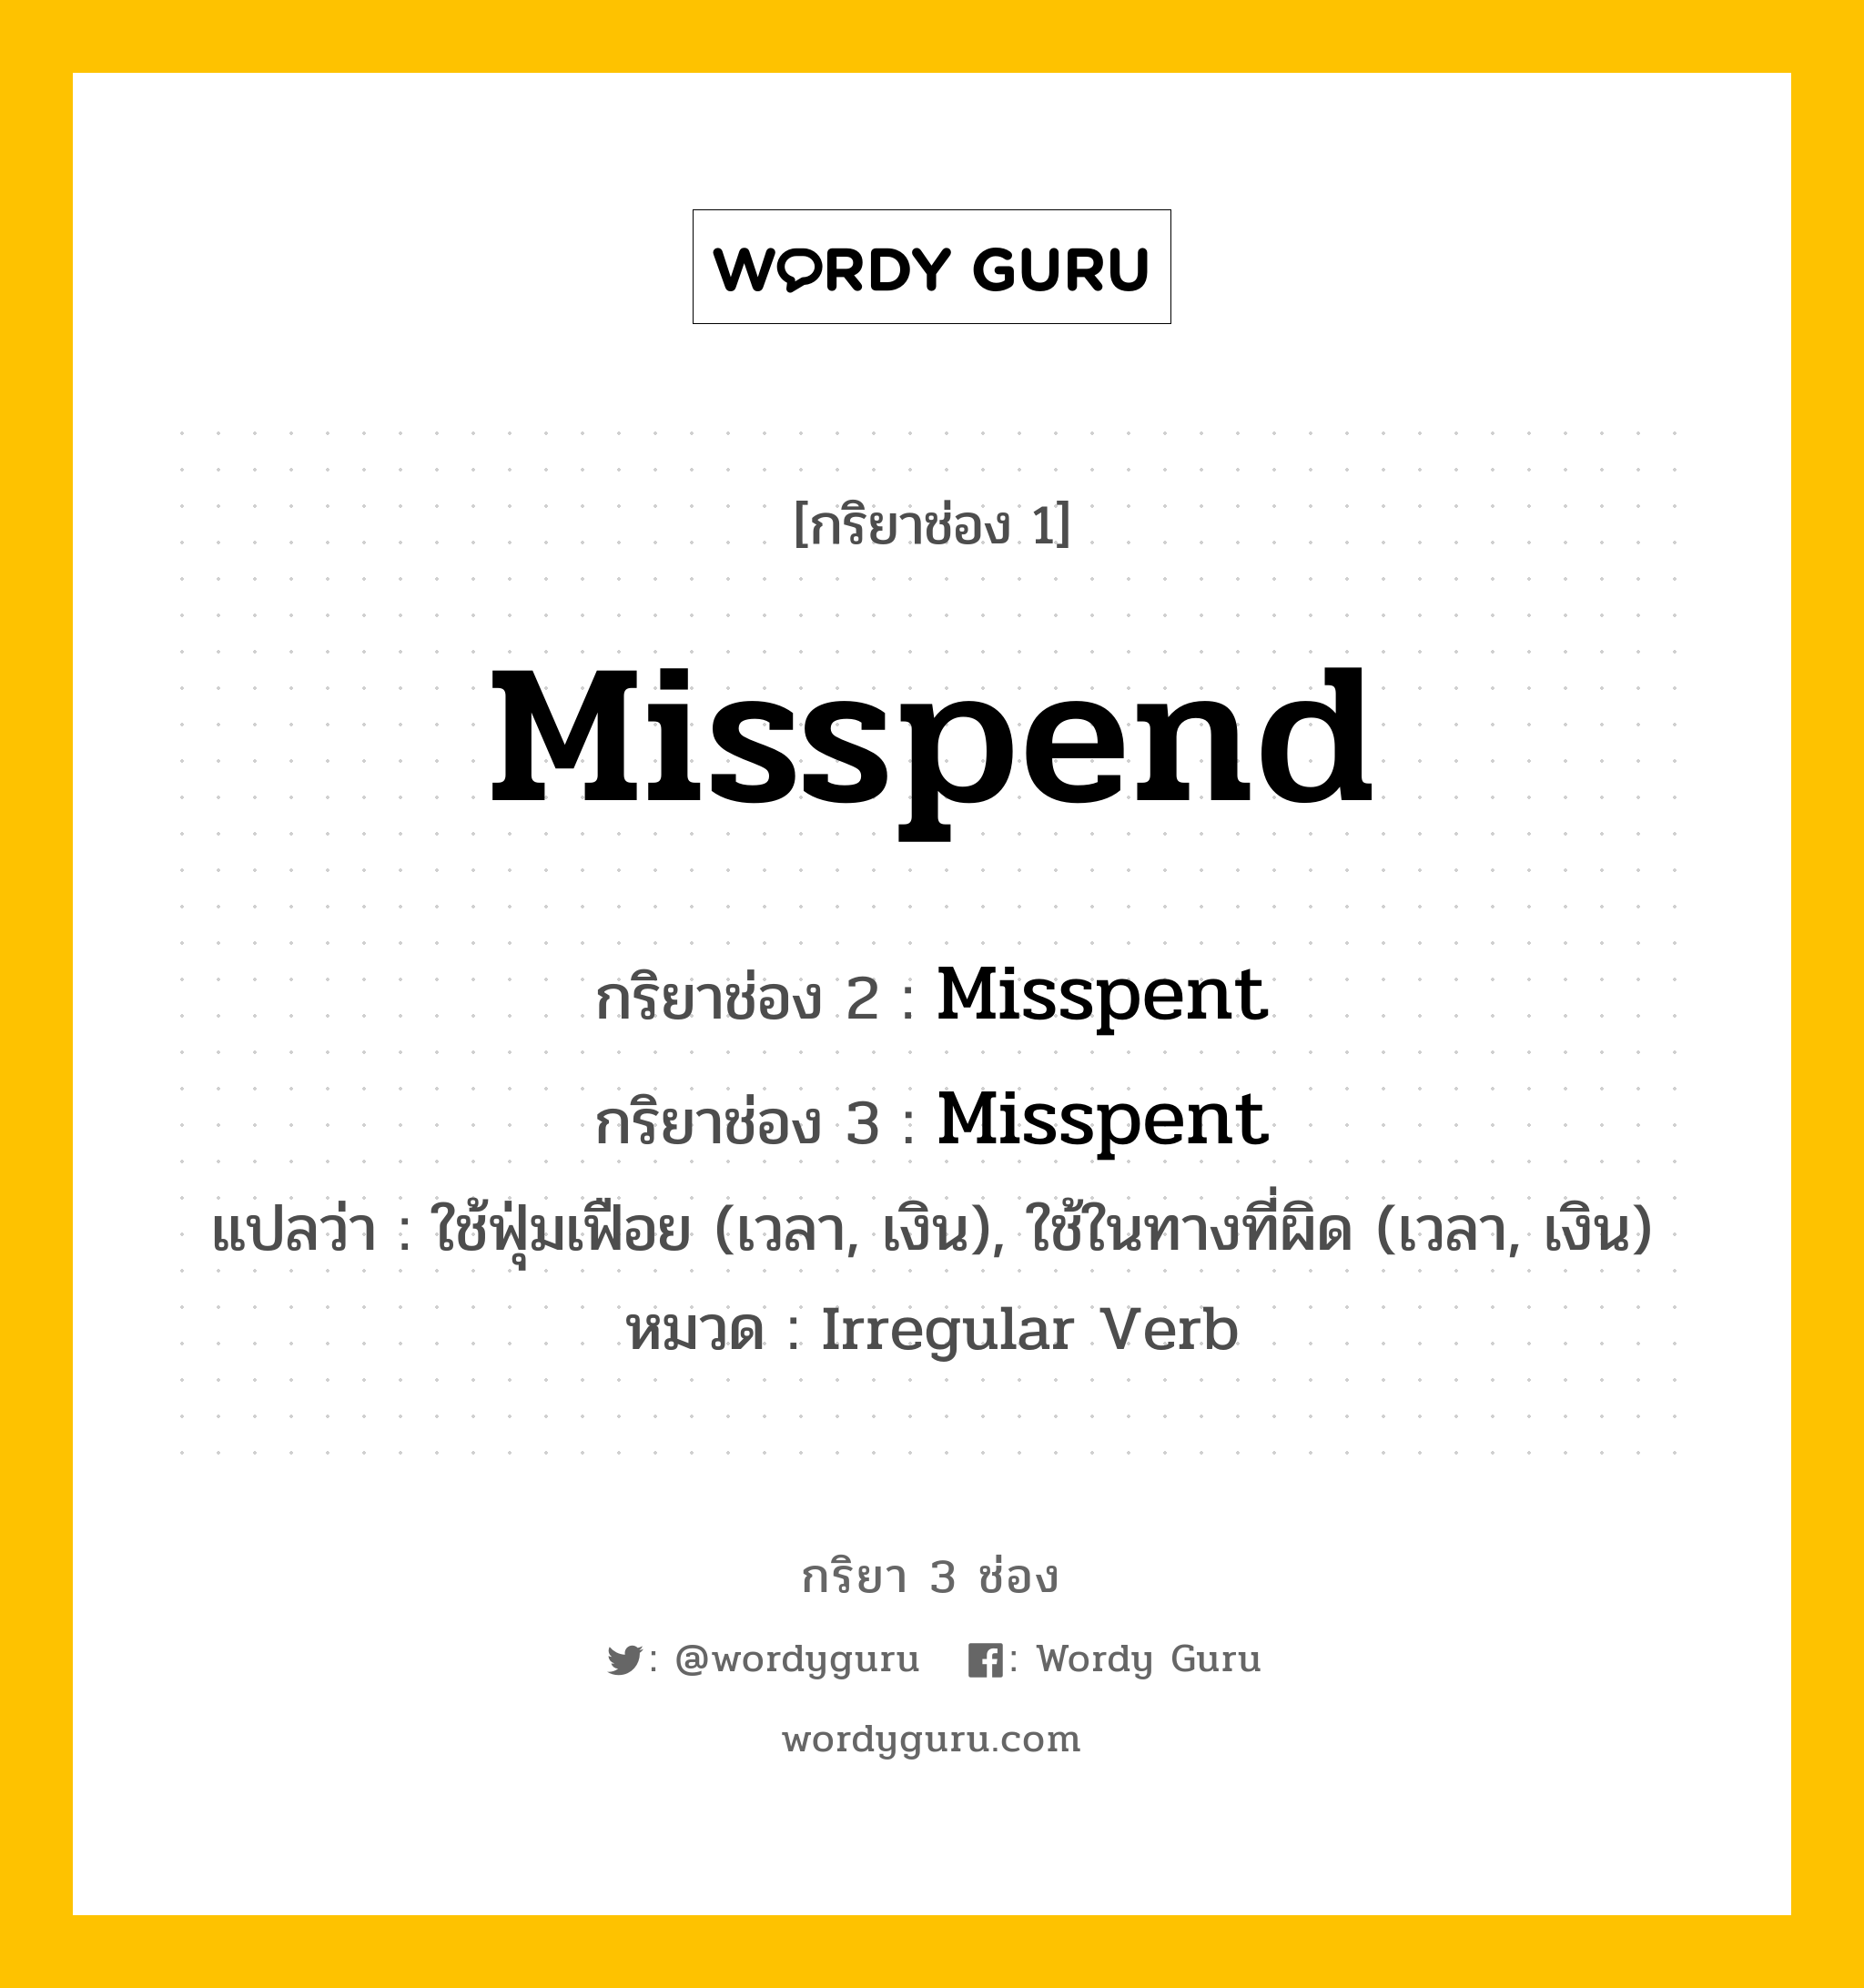 กริยา 3 ช่อง ของ Misspend คืออะไร? มาดูคำอ่าน คำแปลกันเลย, กริยาช่อง 1 Misspend กริยาช่อง 2 Misspent กริยาช่อง 3 Misspent แปลว่า ใช้ฟุ่มเฟือย (เวลา, เงิน), ใช้ในทางที่ผิด (เวลา, เงิน) หมวด Irregular Verb หมวด Irregular Verb